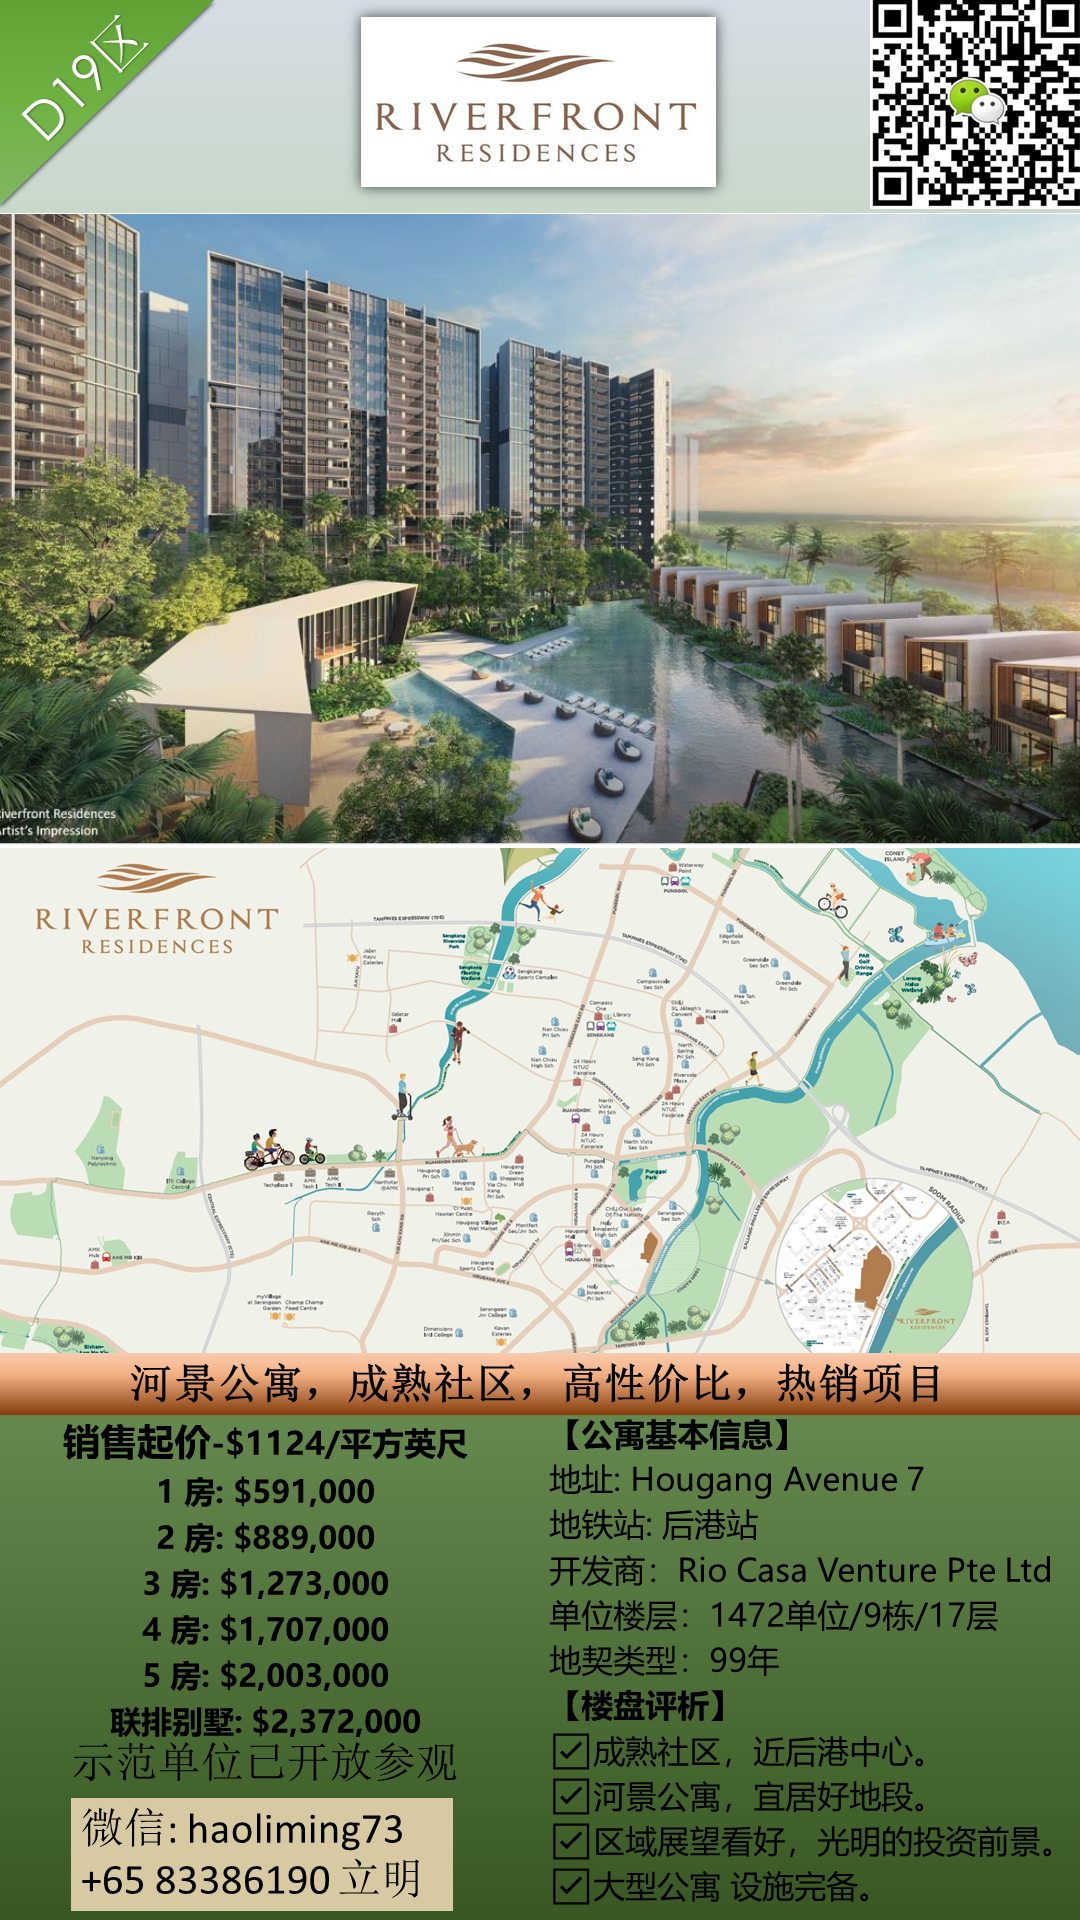 RIVERFRONT 河景公寓 成熟社区 热销项目83386190.png